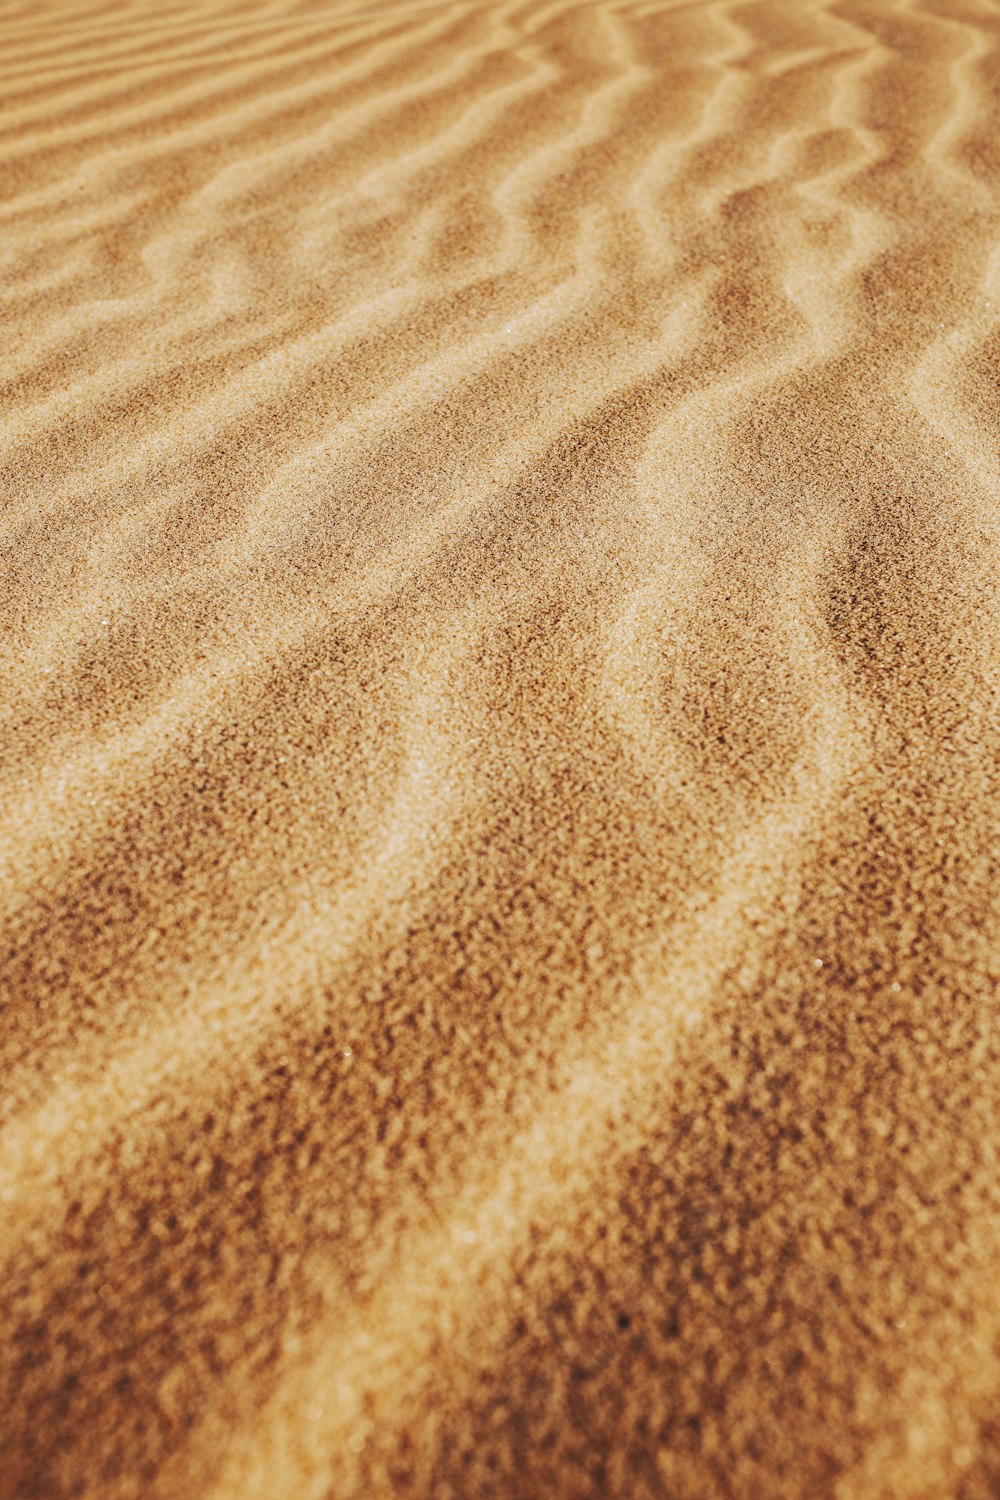 areia marrom com sombra da pessoa